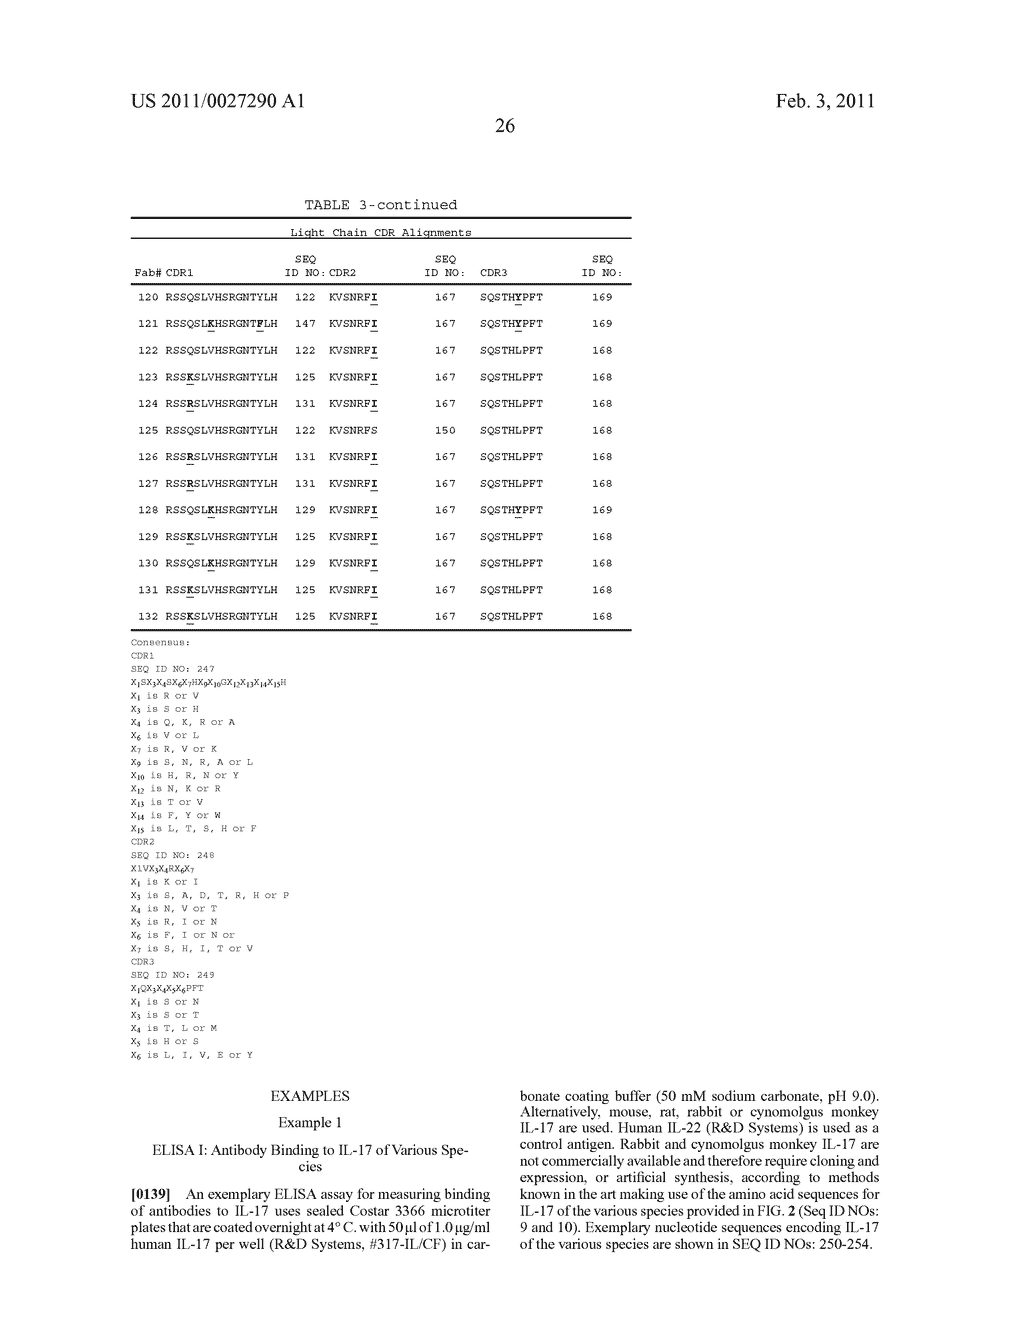 ANTI-IL-17 ANTIBODIES - diagram, schematic, and image 29